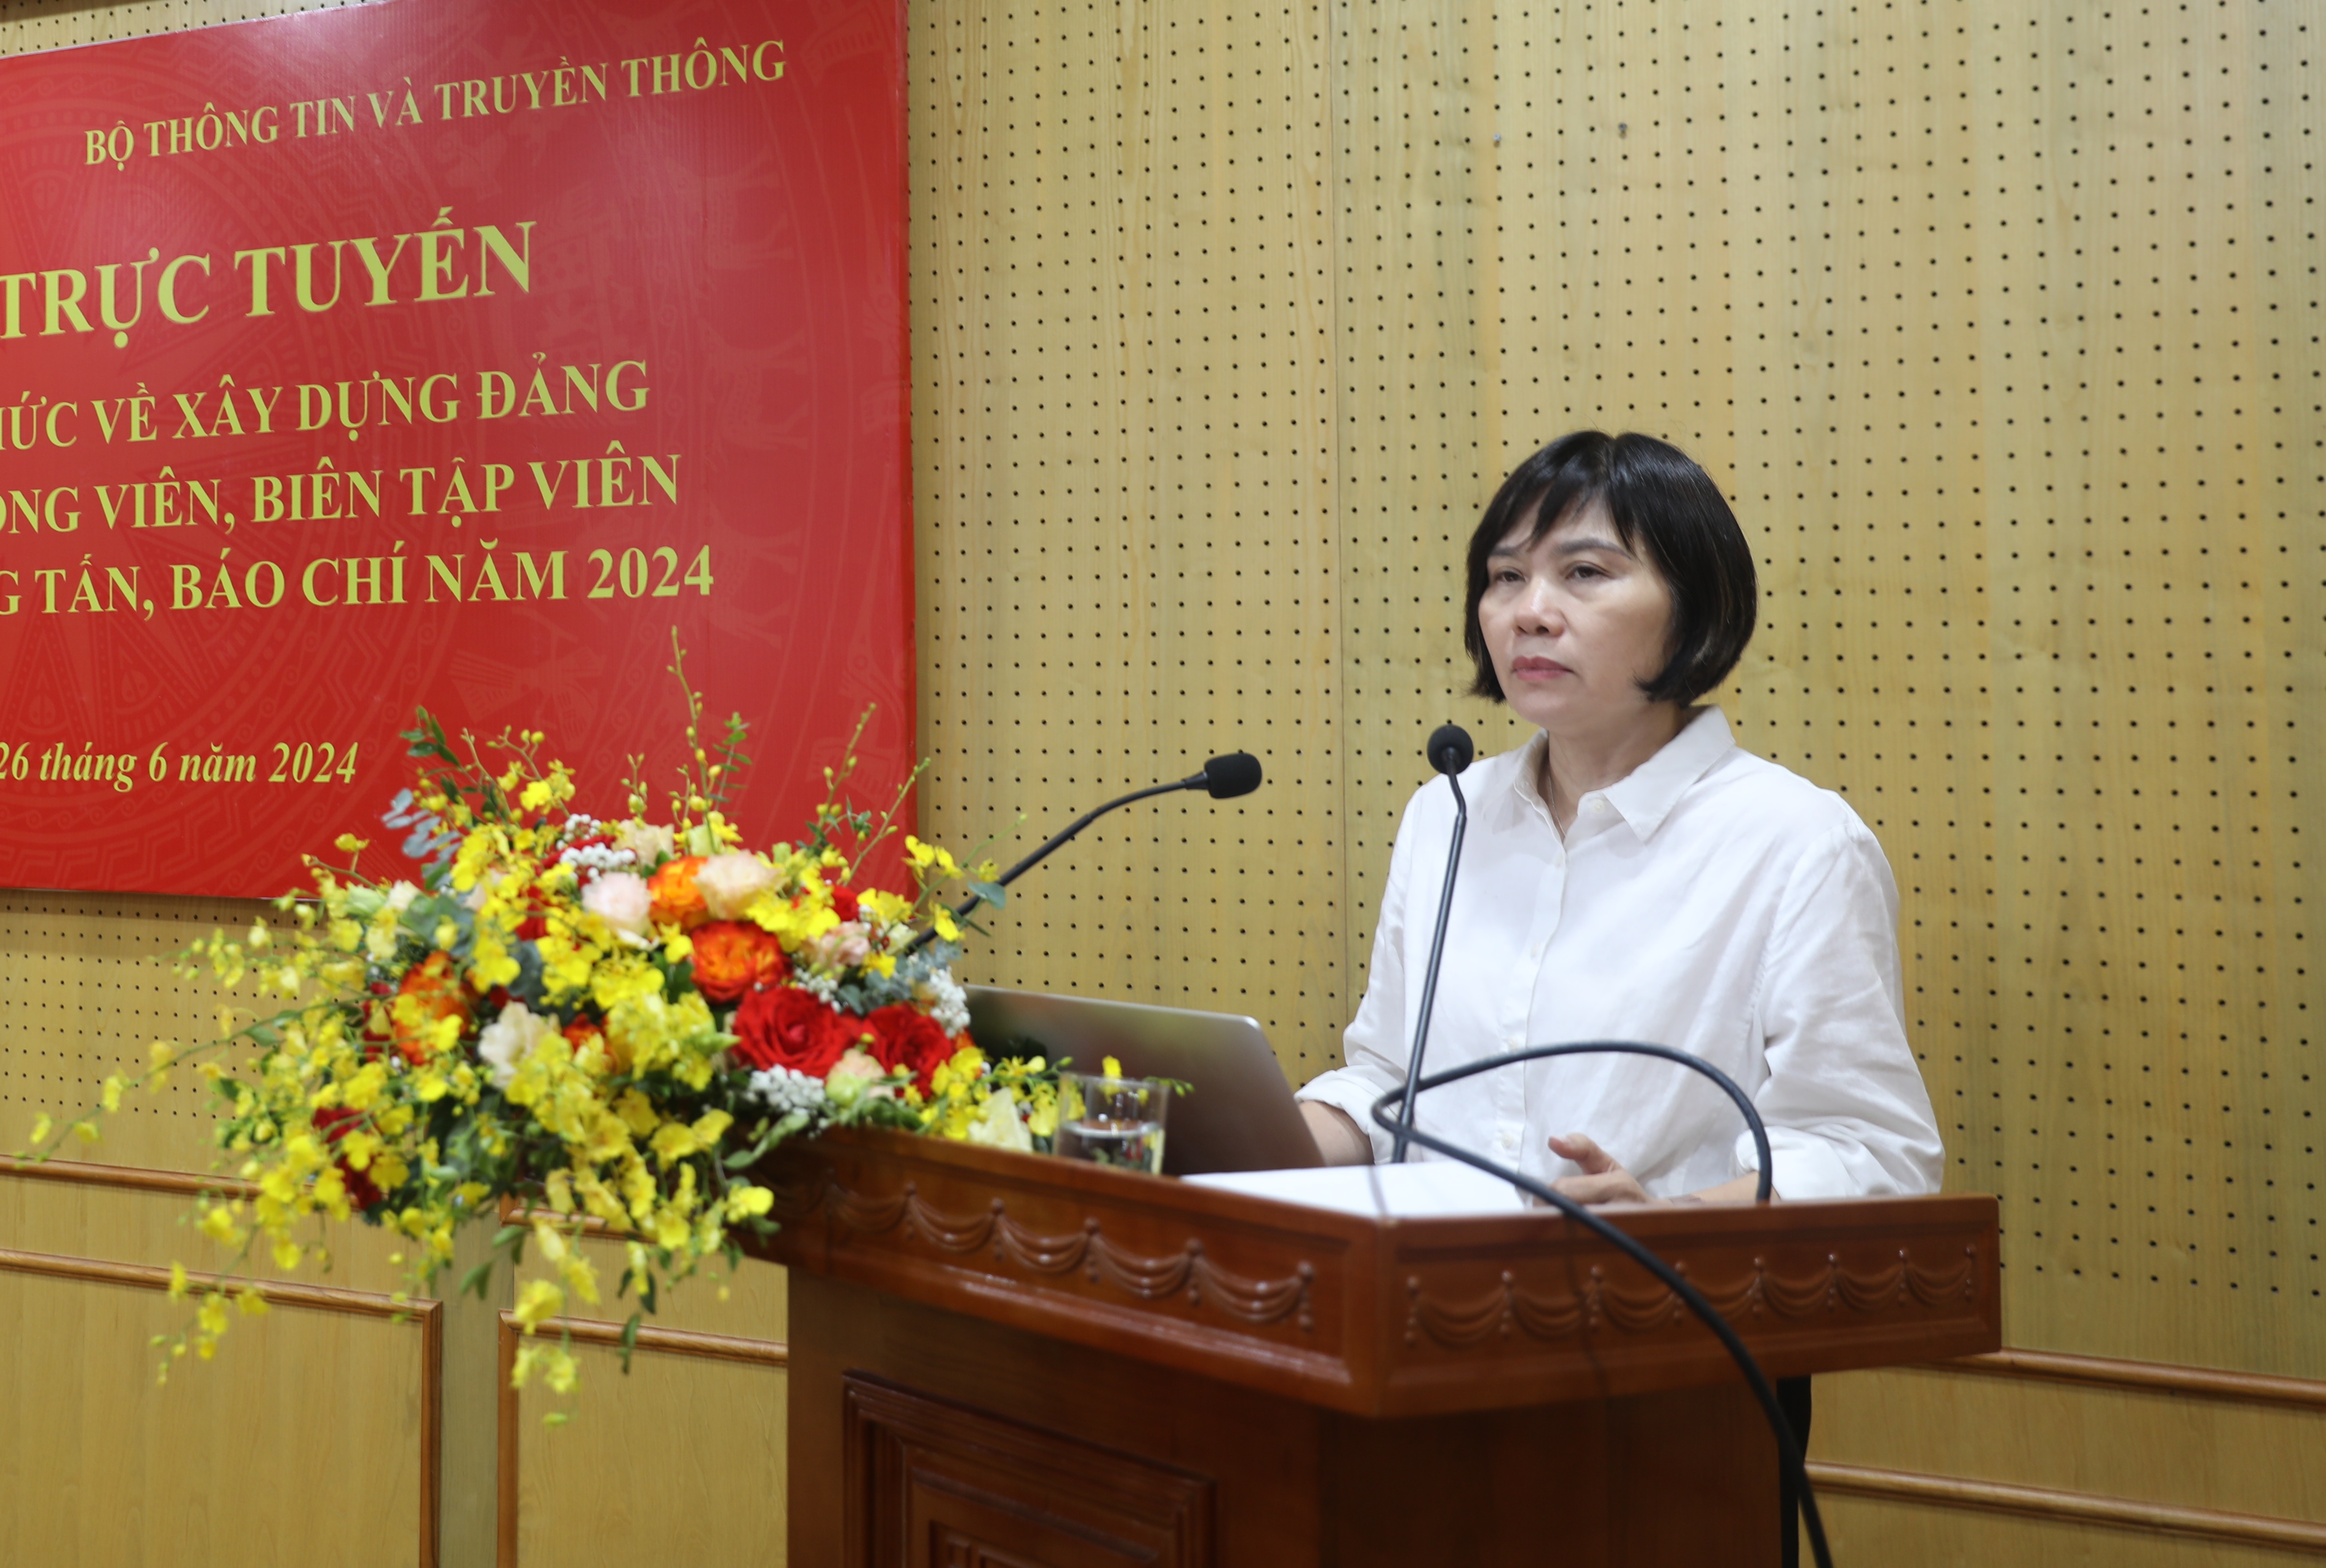 Đ/c Đỗ Thị Thu Hằng, Ủy viên BTV, Trưởng ban Nghiệp vụ Hội Nhà báo Việt Nam chia sẻ kinh nghiệm về sáng tạo tác phẩm báo chí thể loại chính luận.